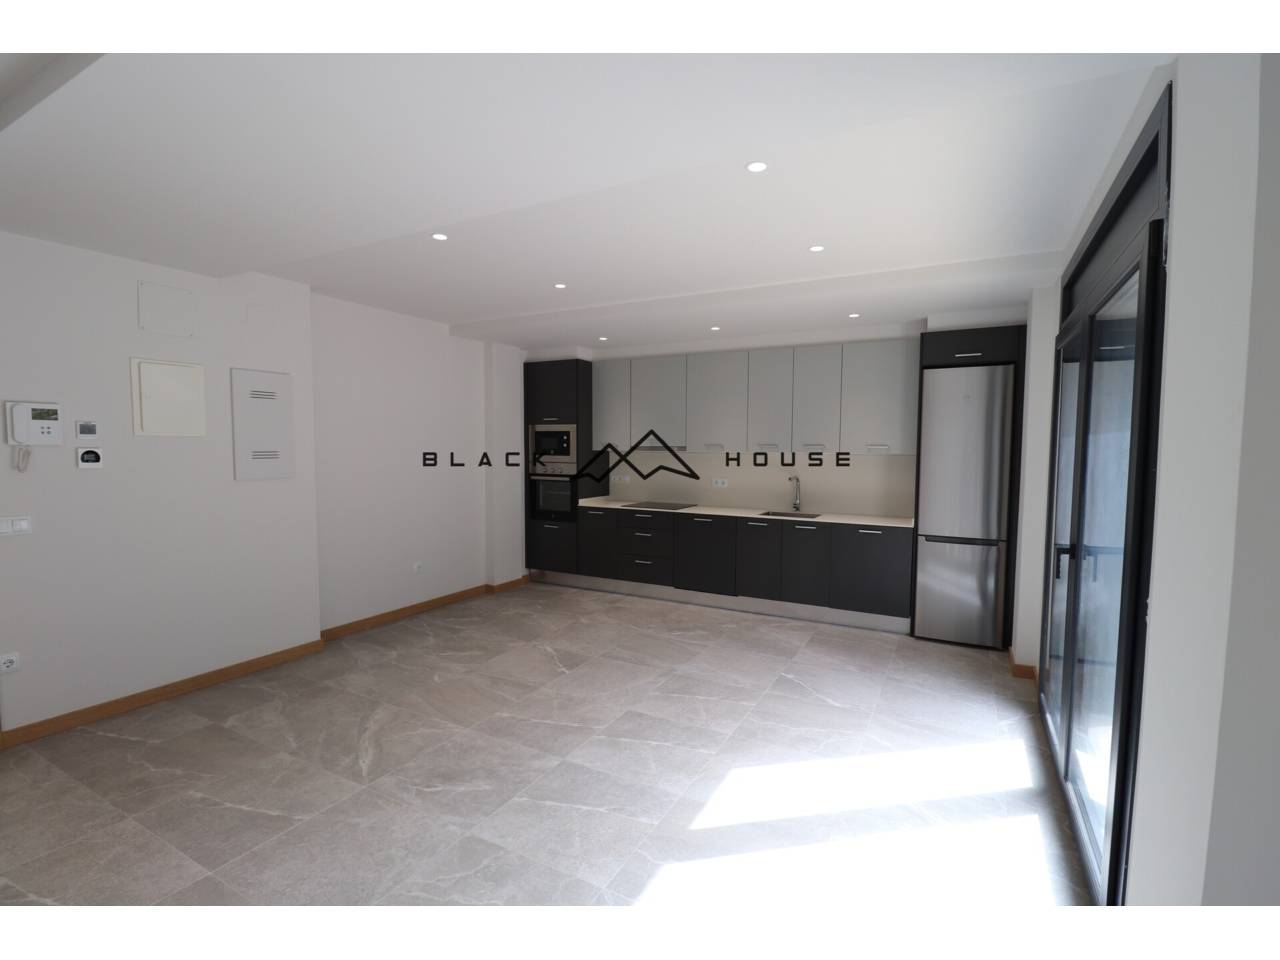 Appartement de location de nouvelle construction situé au centre d'Andorre-la-Vieille.